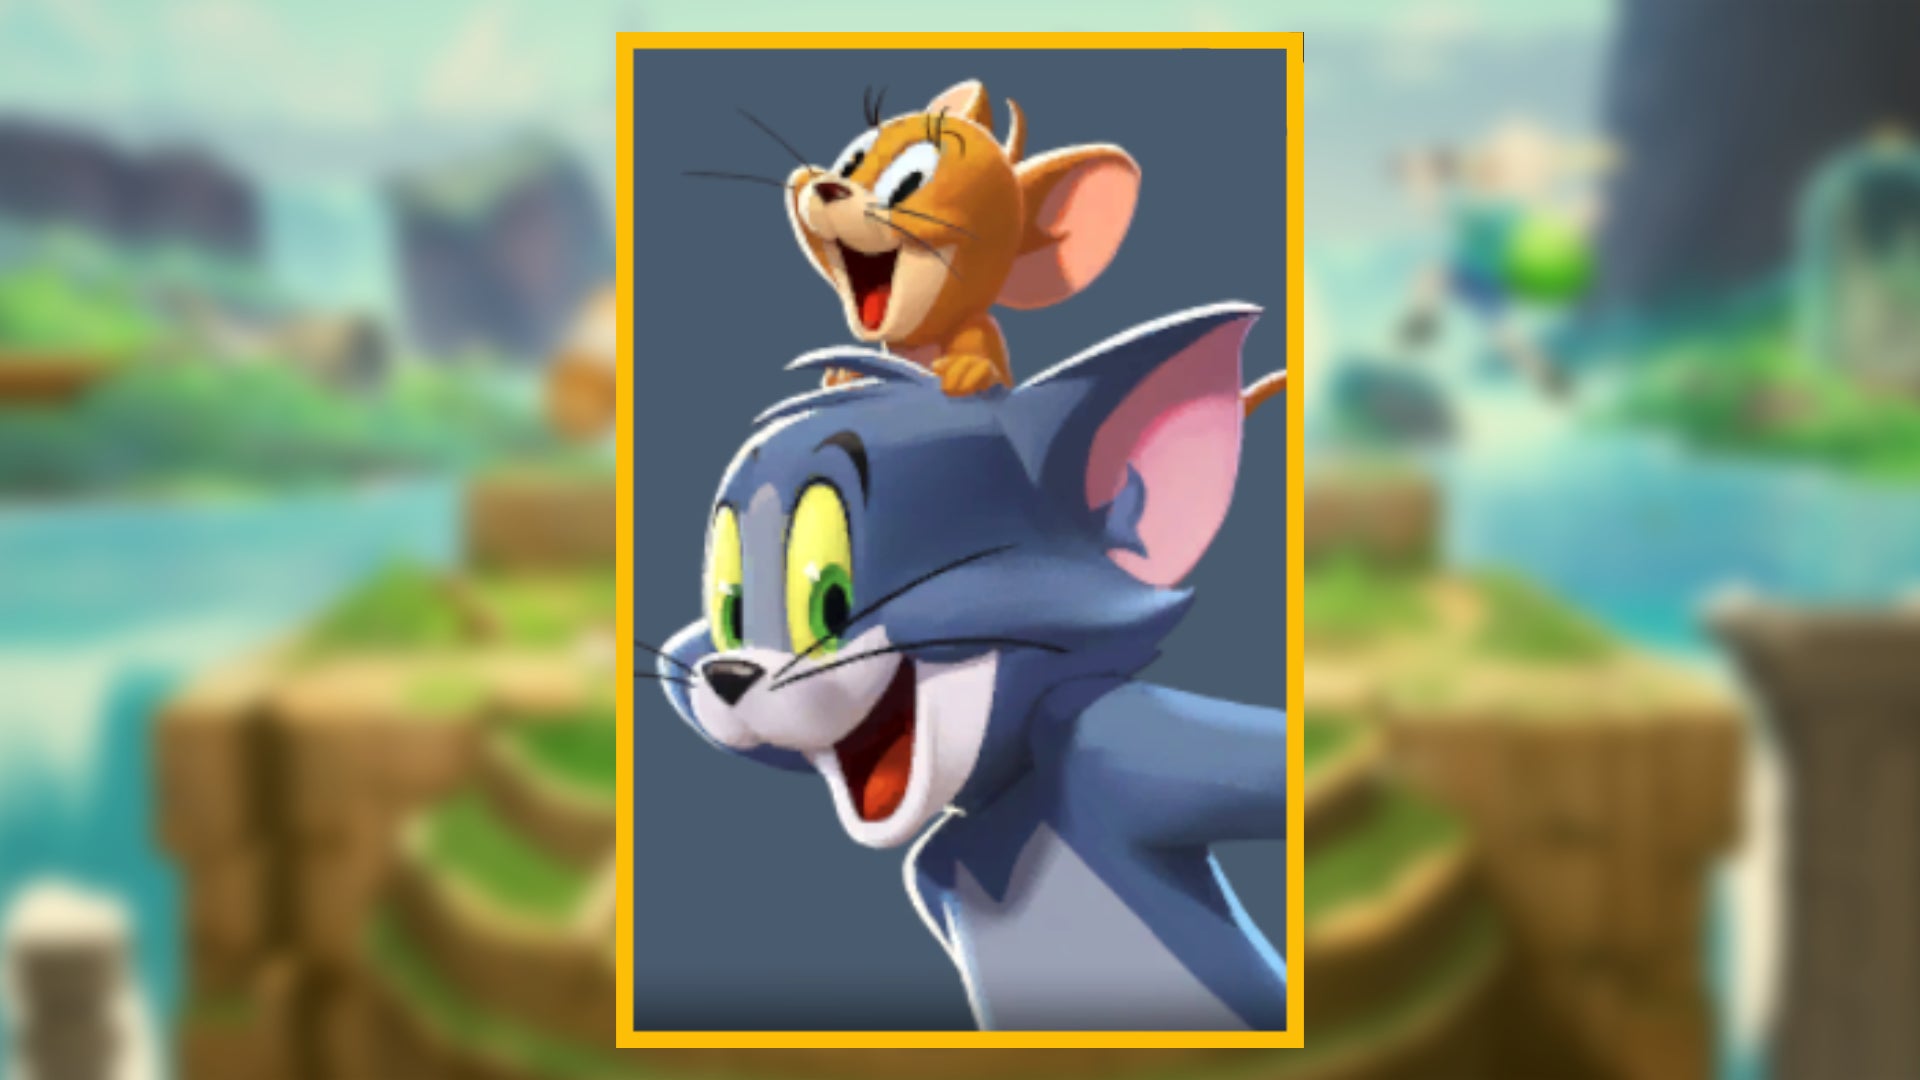 Портрет персонажа Тома и Джерри, играбельного персонажа в MultiVersus, на размытом фоне.